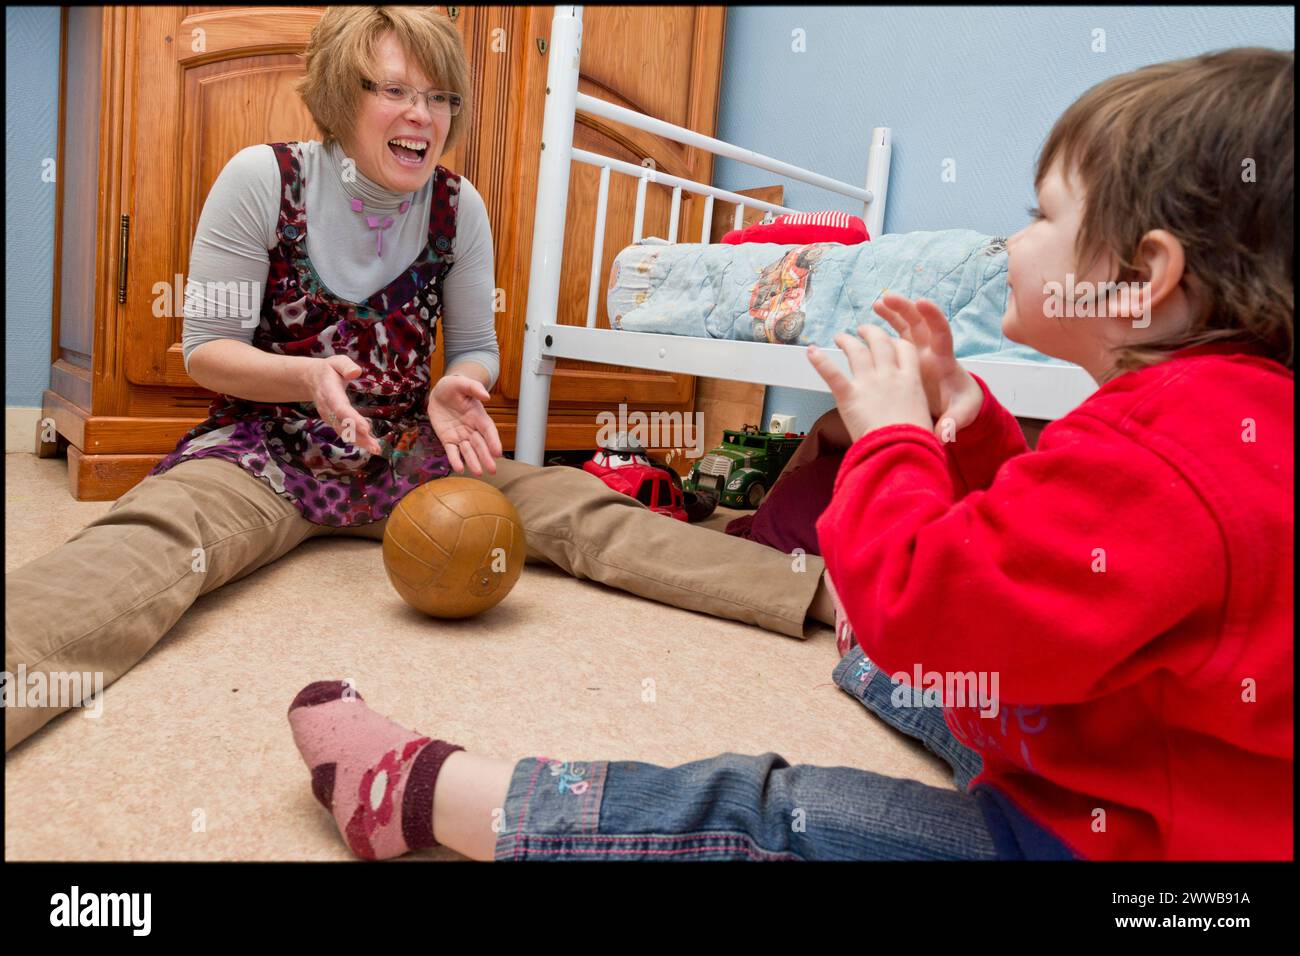 ASE - assistenza sociale infantile. Isabelle sta giocando a palla con Sarah sul pavimento della stanza dei ragazzi. SOLO PER USO EDITORIALE. Foto Stock